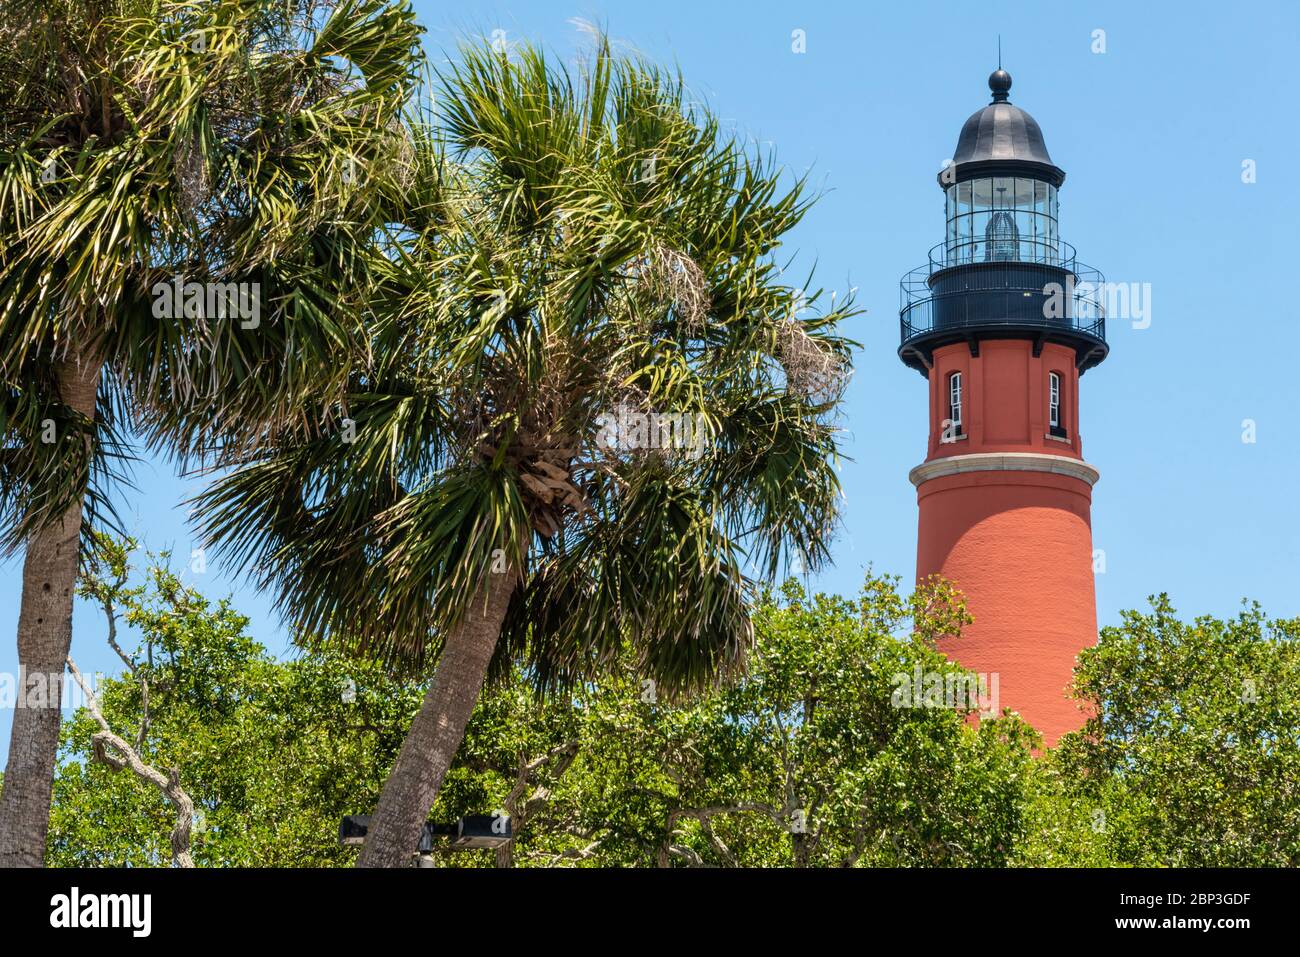 Historischer Leuchtturm Ponce Inlet, fertiggestellt 1887, in Ponce Inlet, Florida, zwischen Daytona Beach Shores und New Smyrna Beach. (USA) Stockfoto